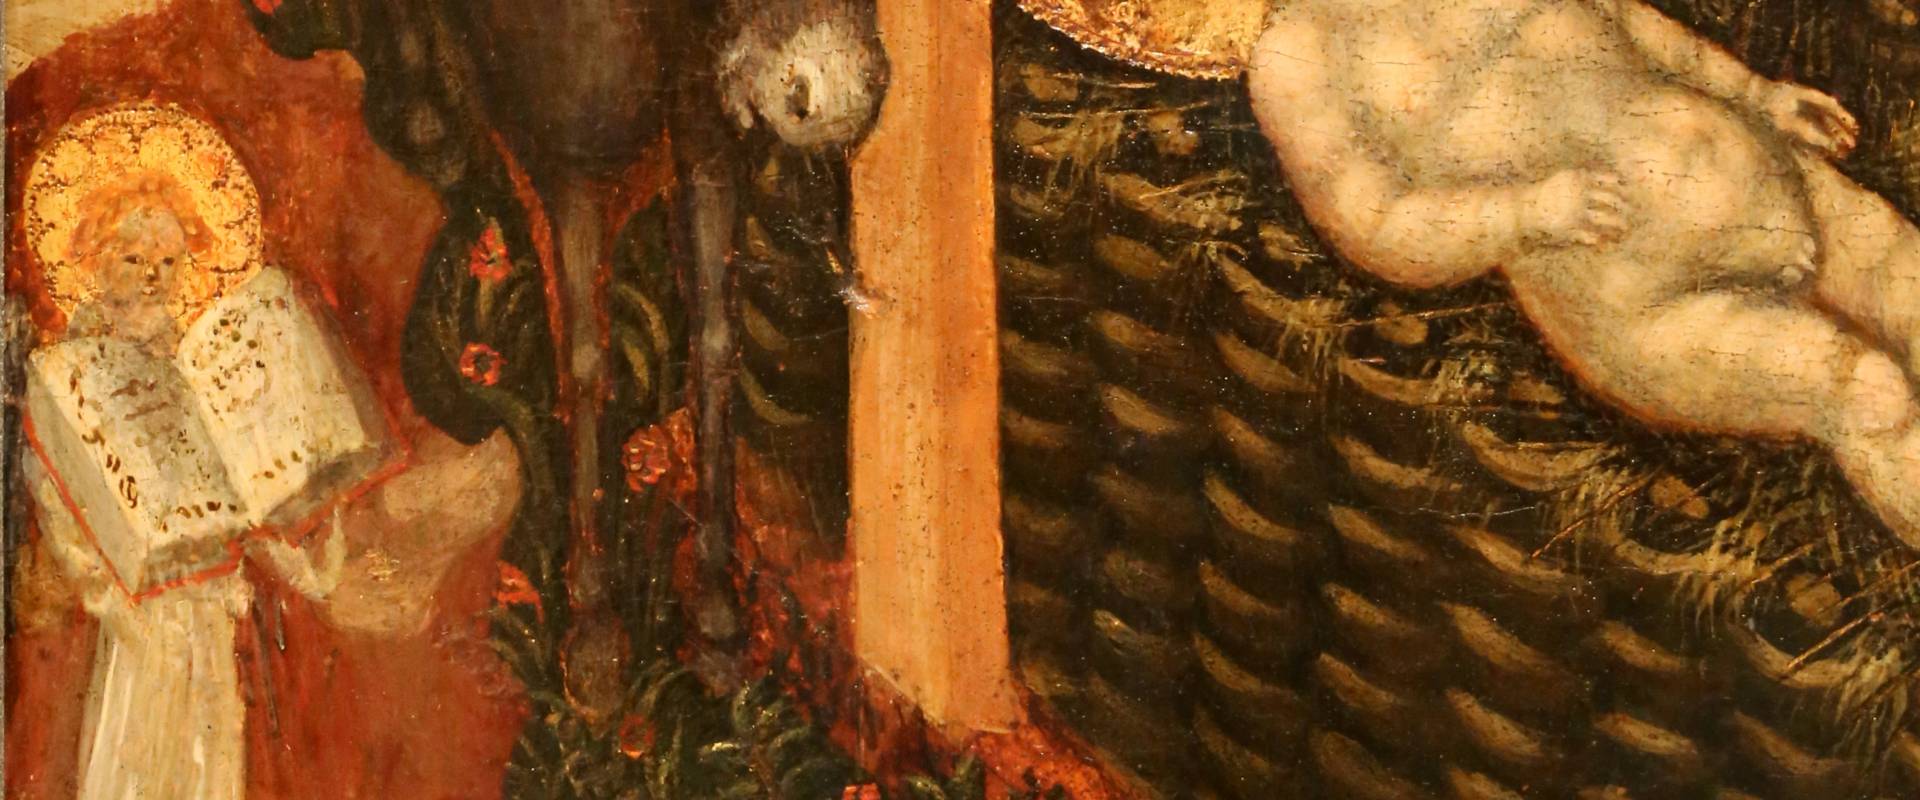 Federico tedesco, natività, 1420, 03 asino, angelo e simboli evangelisti foto di Sailko